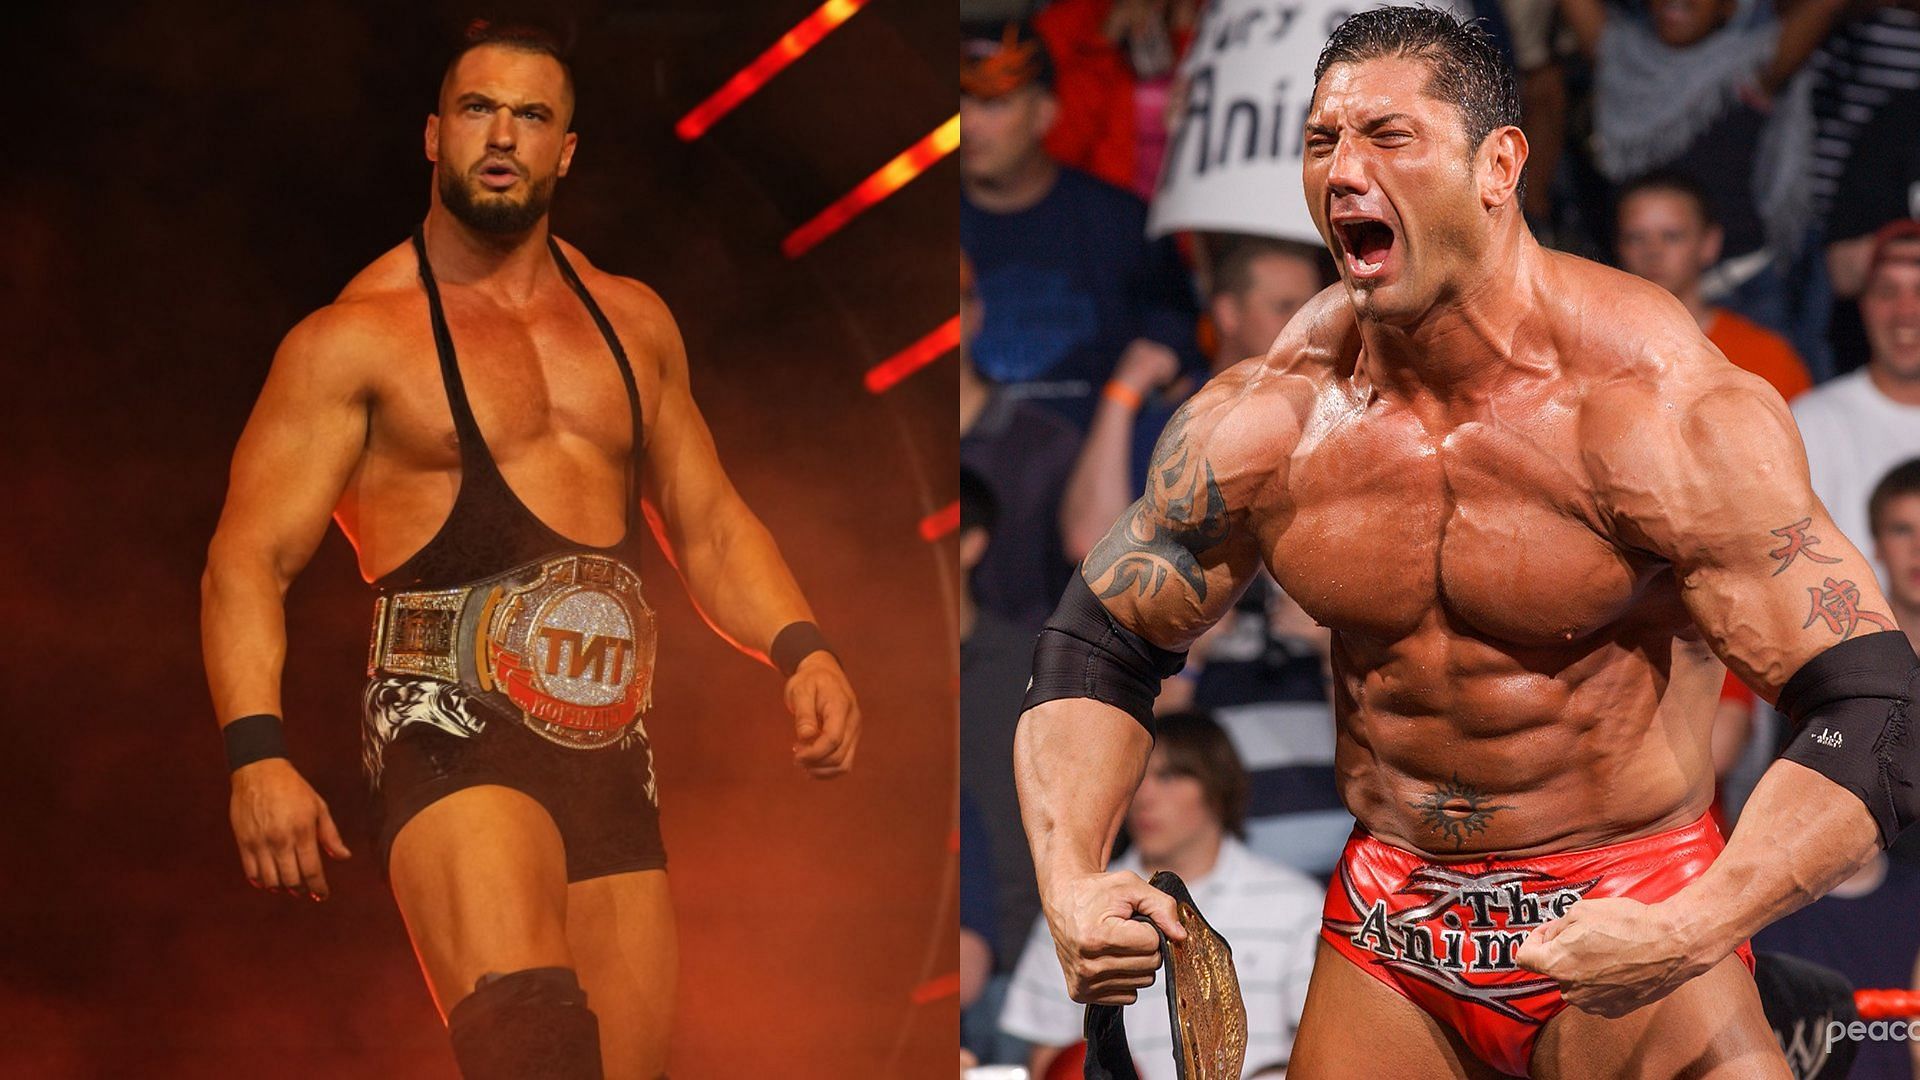 Batista vs. Wardlow is a dream match